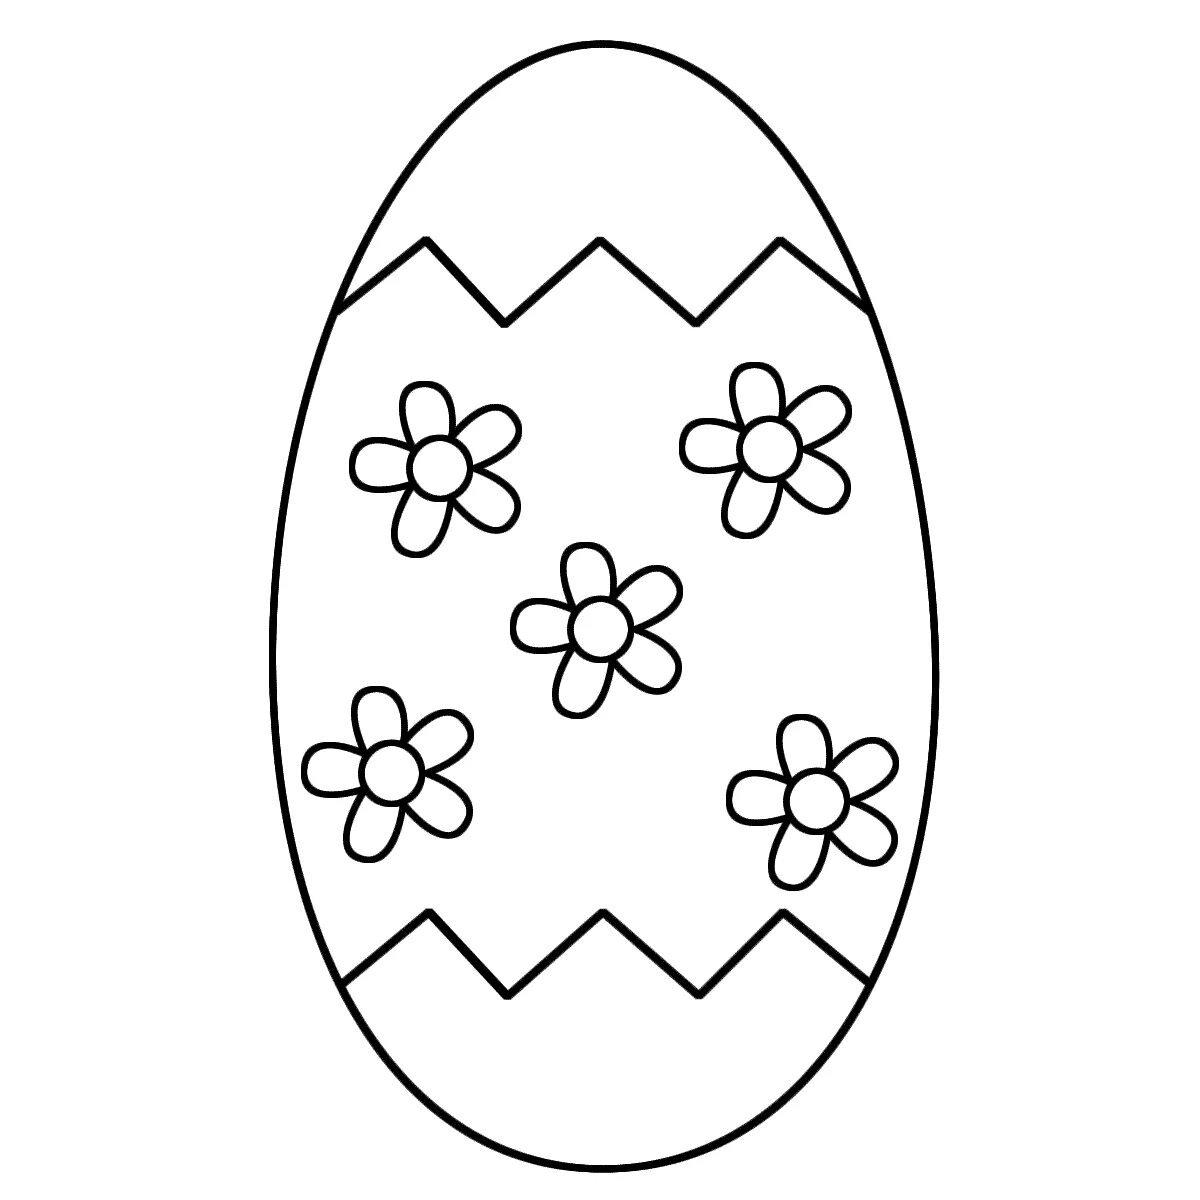 Яйцо шаблон для детей. Пасхальное яйцо раскраска. Пасхальное яйцо раскраска для детей. Раскраски пасочных яиц. Трафареты пасхальных яиц для раскрашивания.